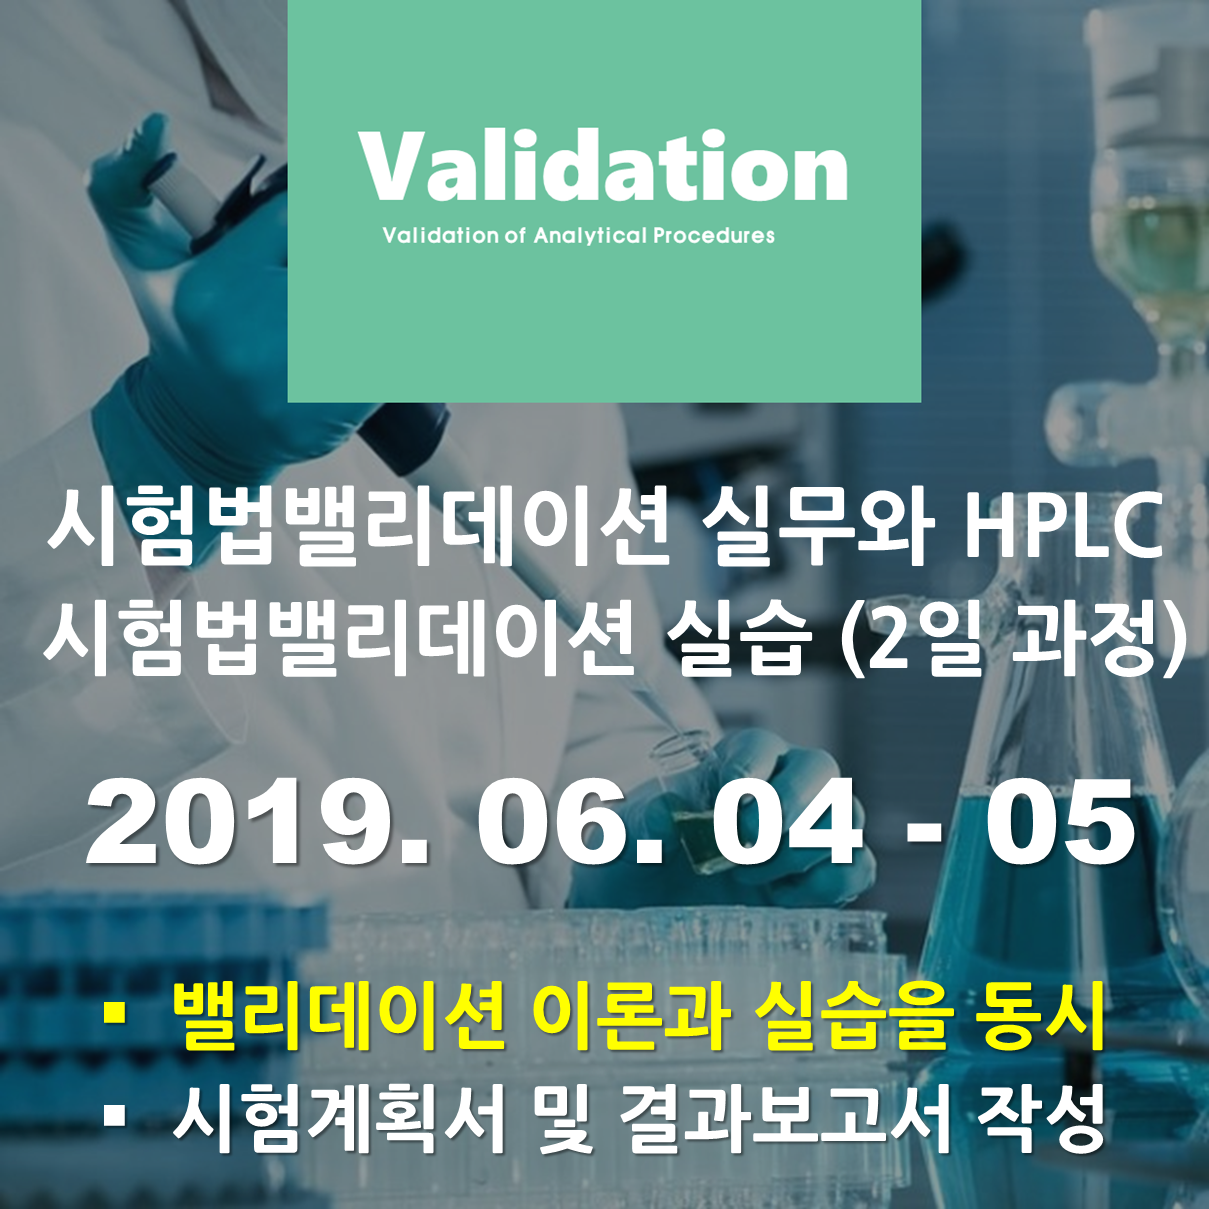 [서울]시험법밸리데이션실무와 HPLC 시험법밸리데이션 실습 (2일 과정)